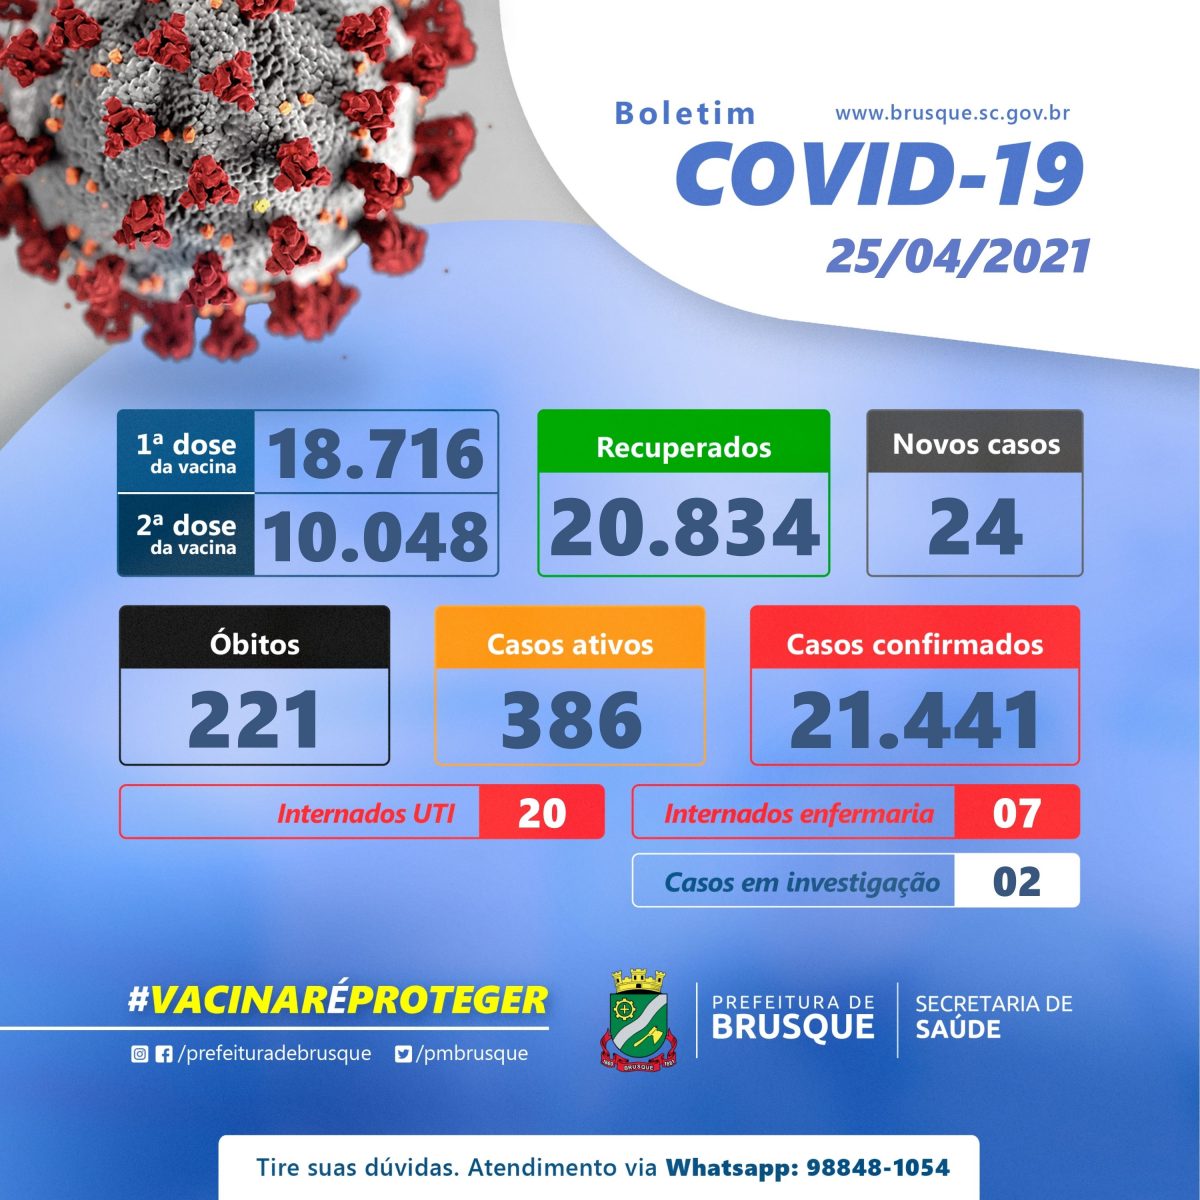 Covid-19: Confira o boletim epidemiológico deste domingo (25)